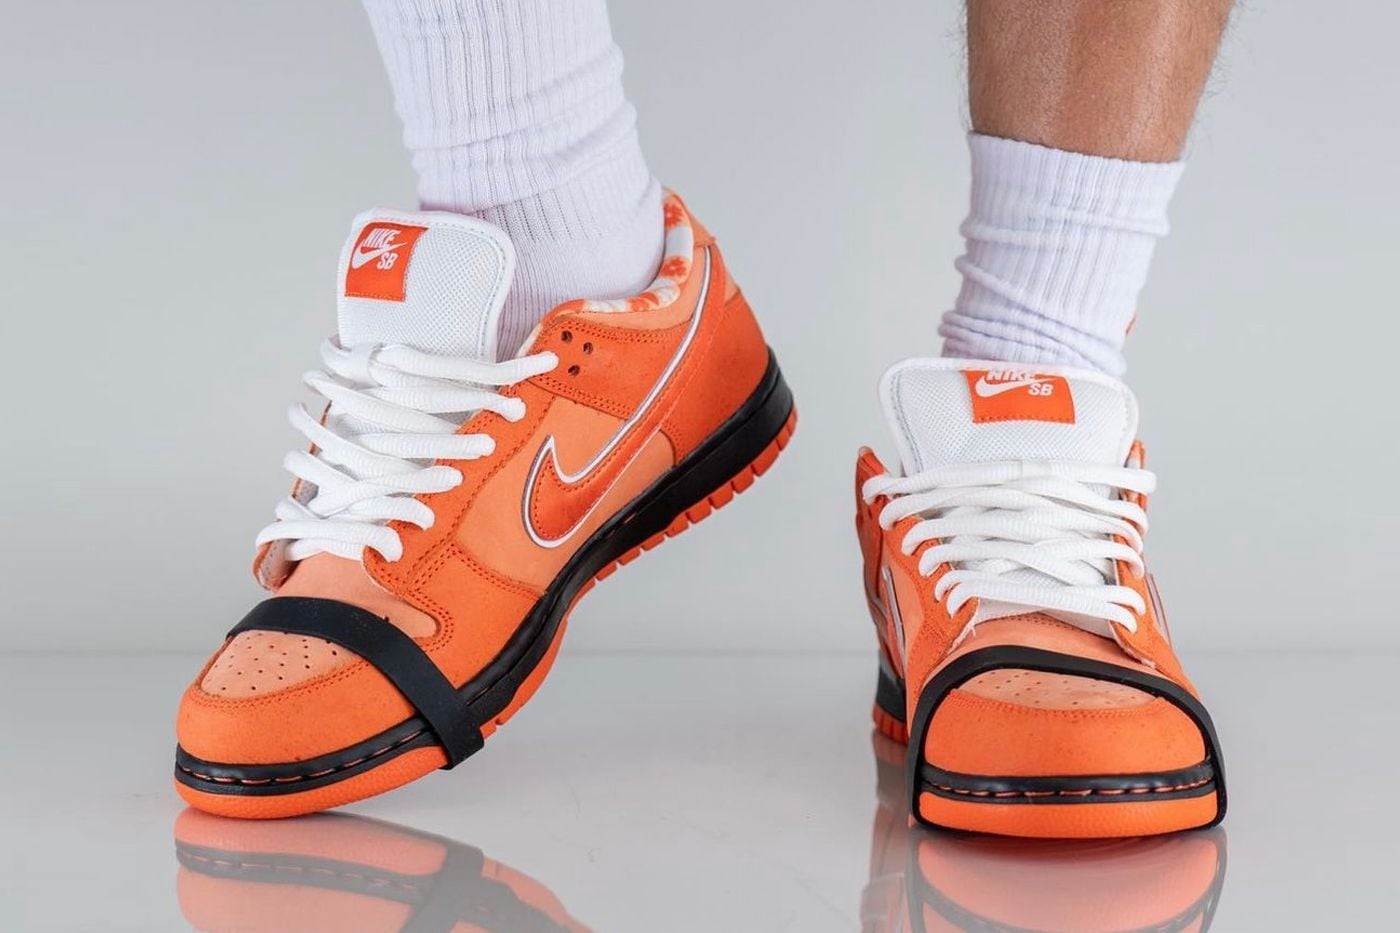 SB Dunk Low Orange la colaboración de Concepts y Nike que será furor a finales de 2022 – FayerWayer